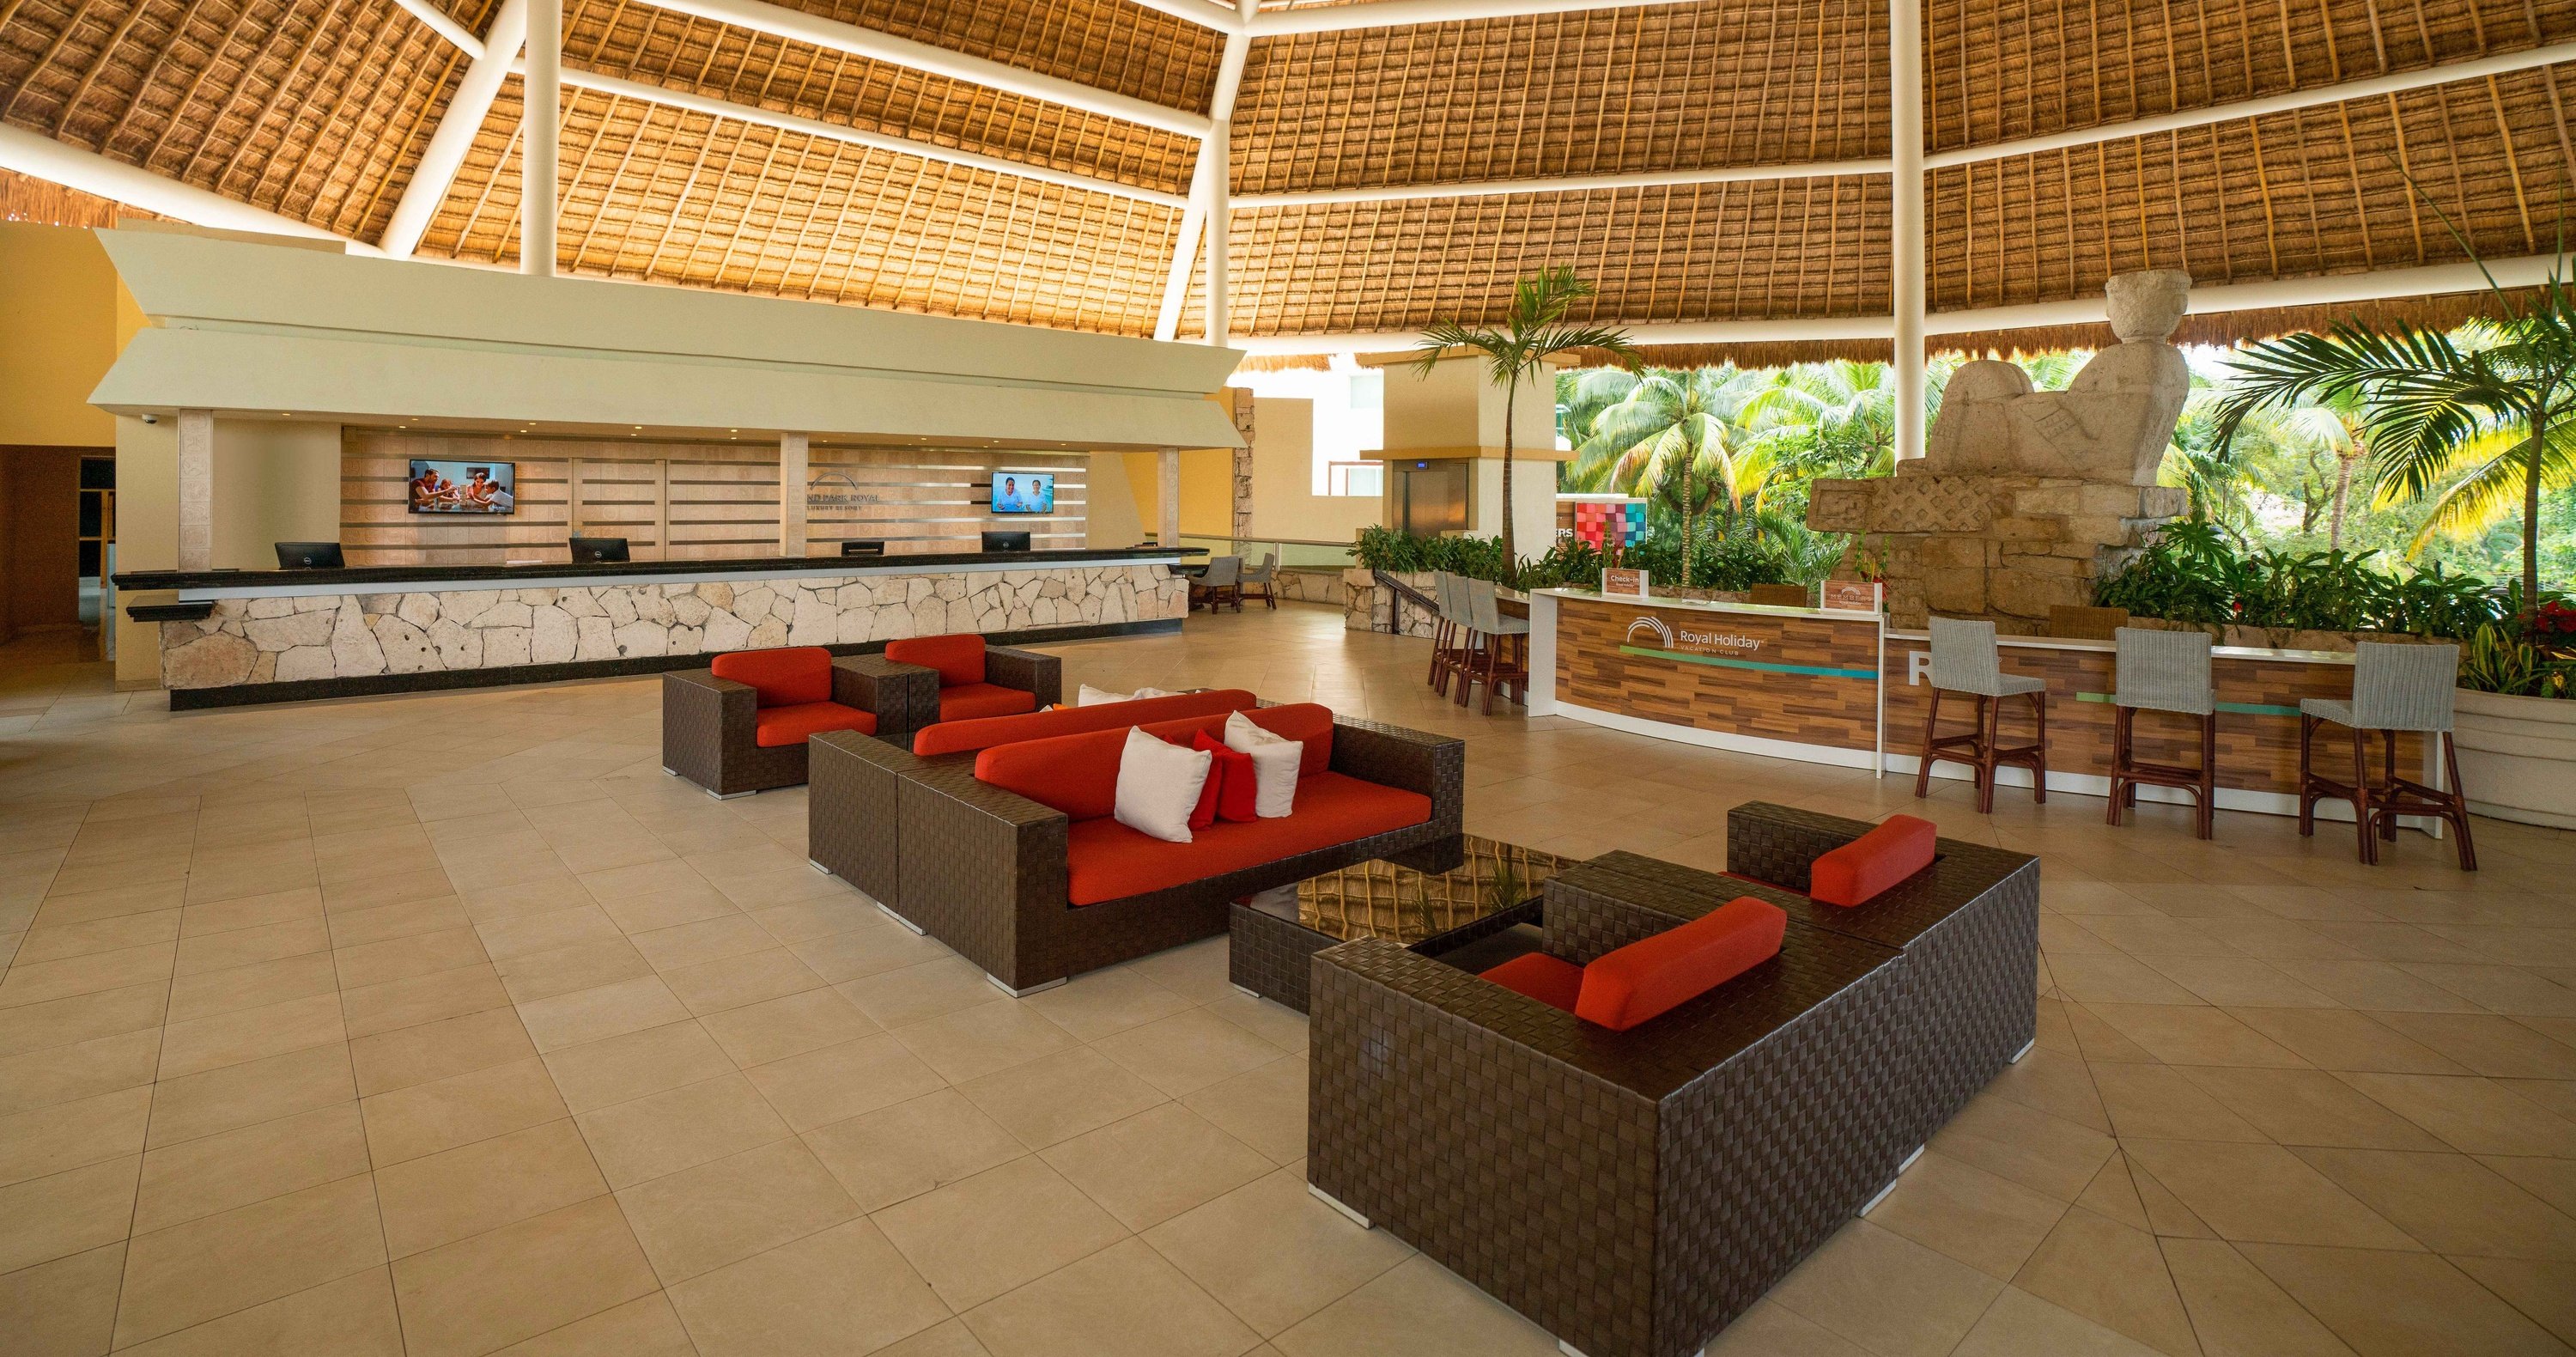 Sala de eventos, celebra el tuyo en el Hotel Grand Park Royal Cozumel en México